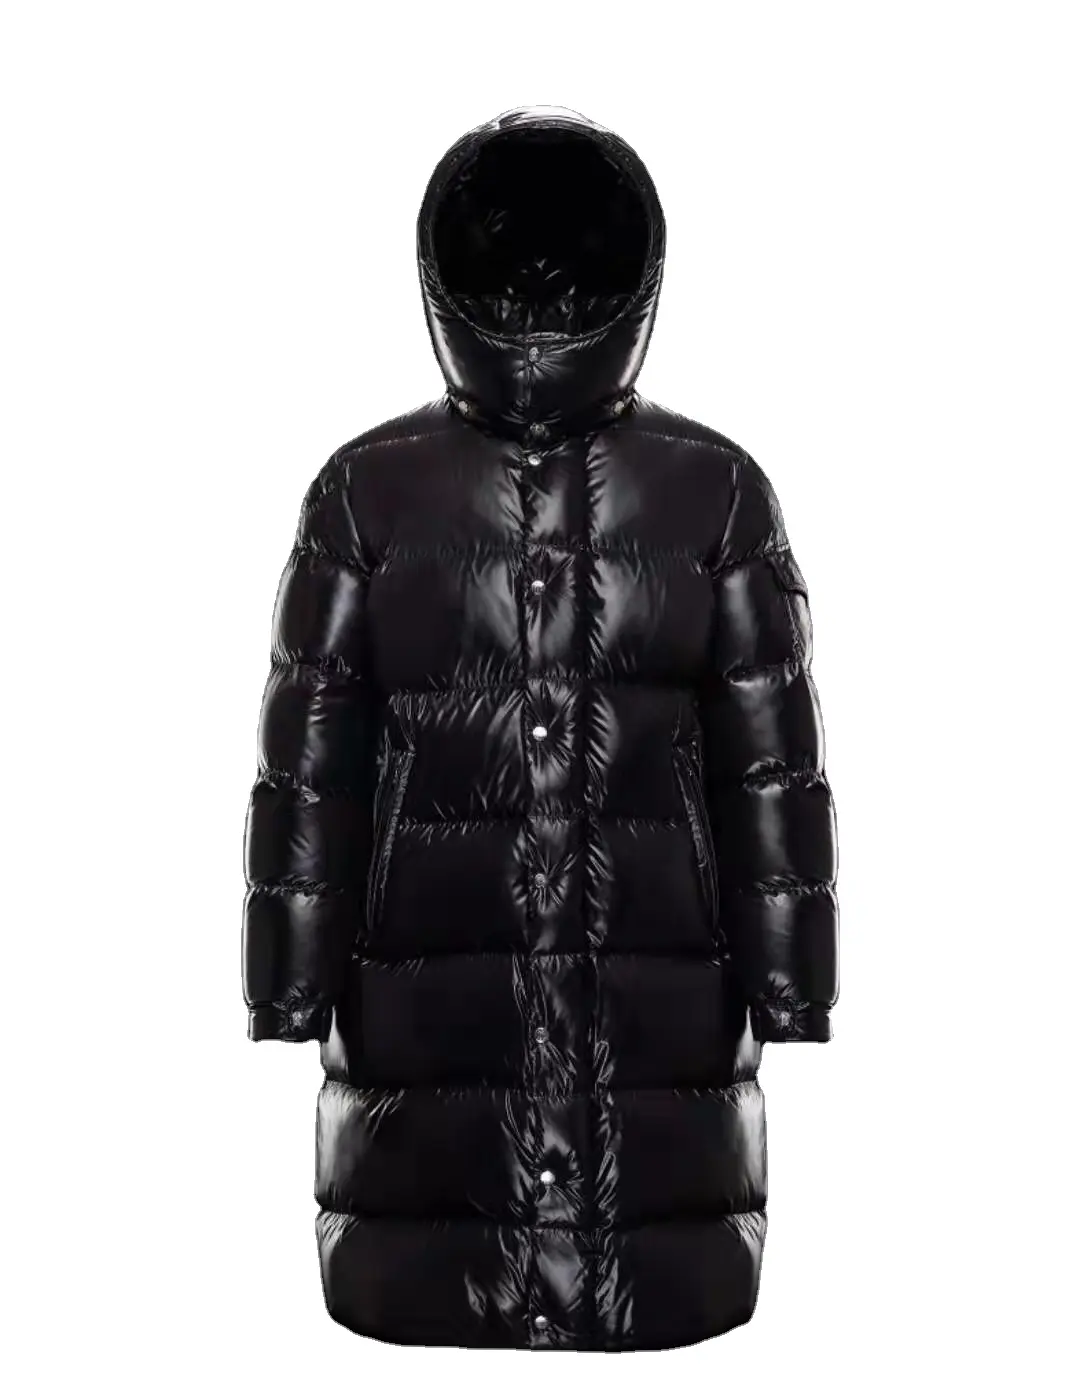 2022 가을/겨울 새로운 남성 다운 재킷 긴 패션 따뜻한 코튼 자켓 eiderdown 코튼 남성 코트 마야 다운 재킷